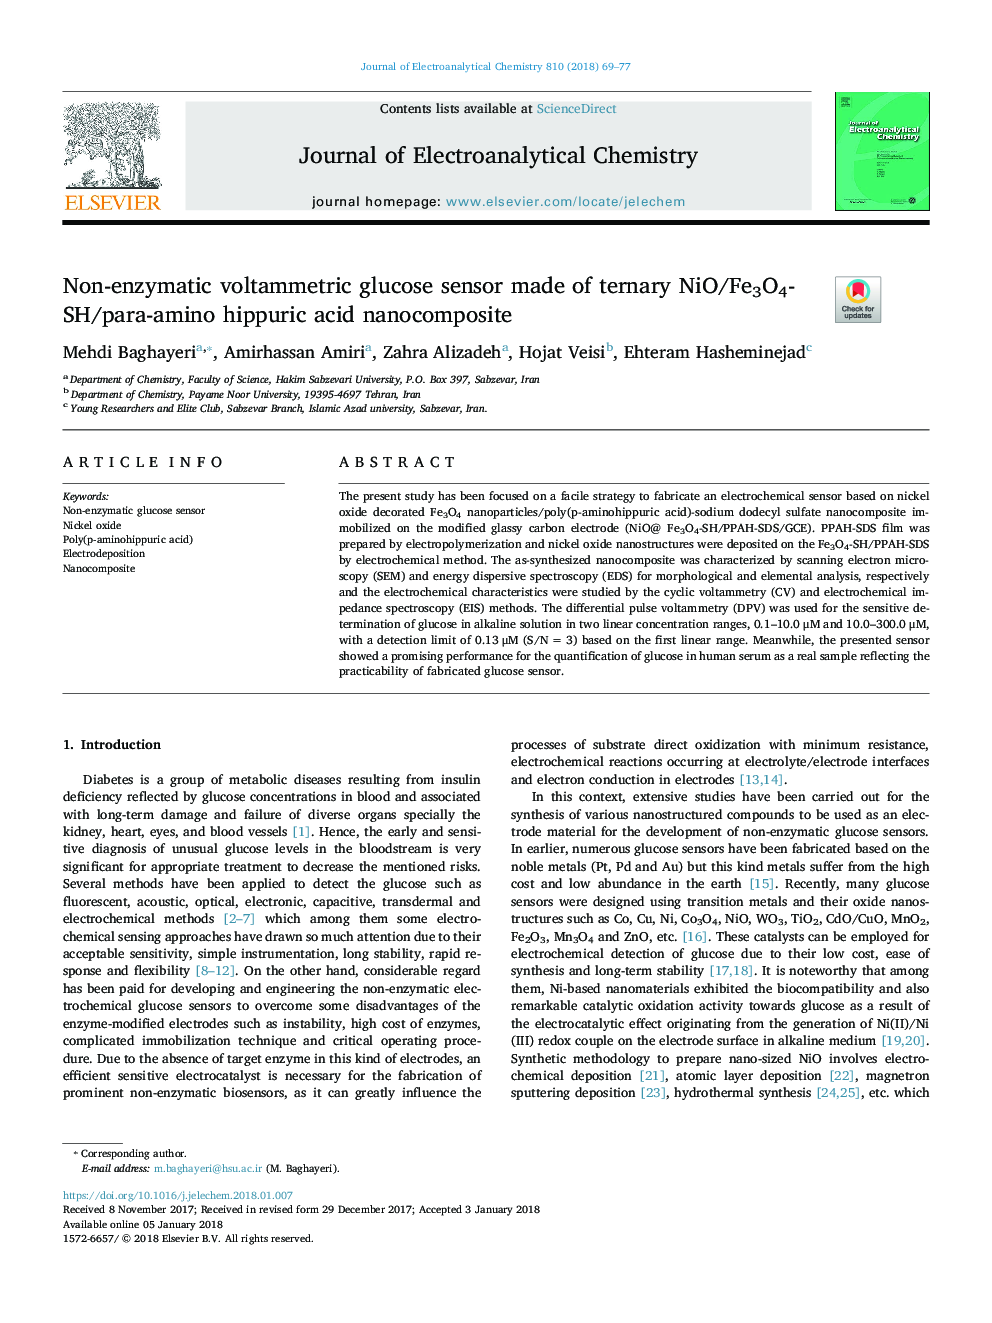 Non-enzymatic voltammetric glucose sensor made of ternary NiO/Fe3O4-SH/para-amino hippuric acid nanocomposite